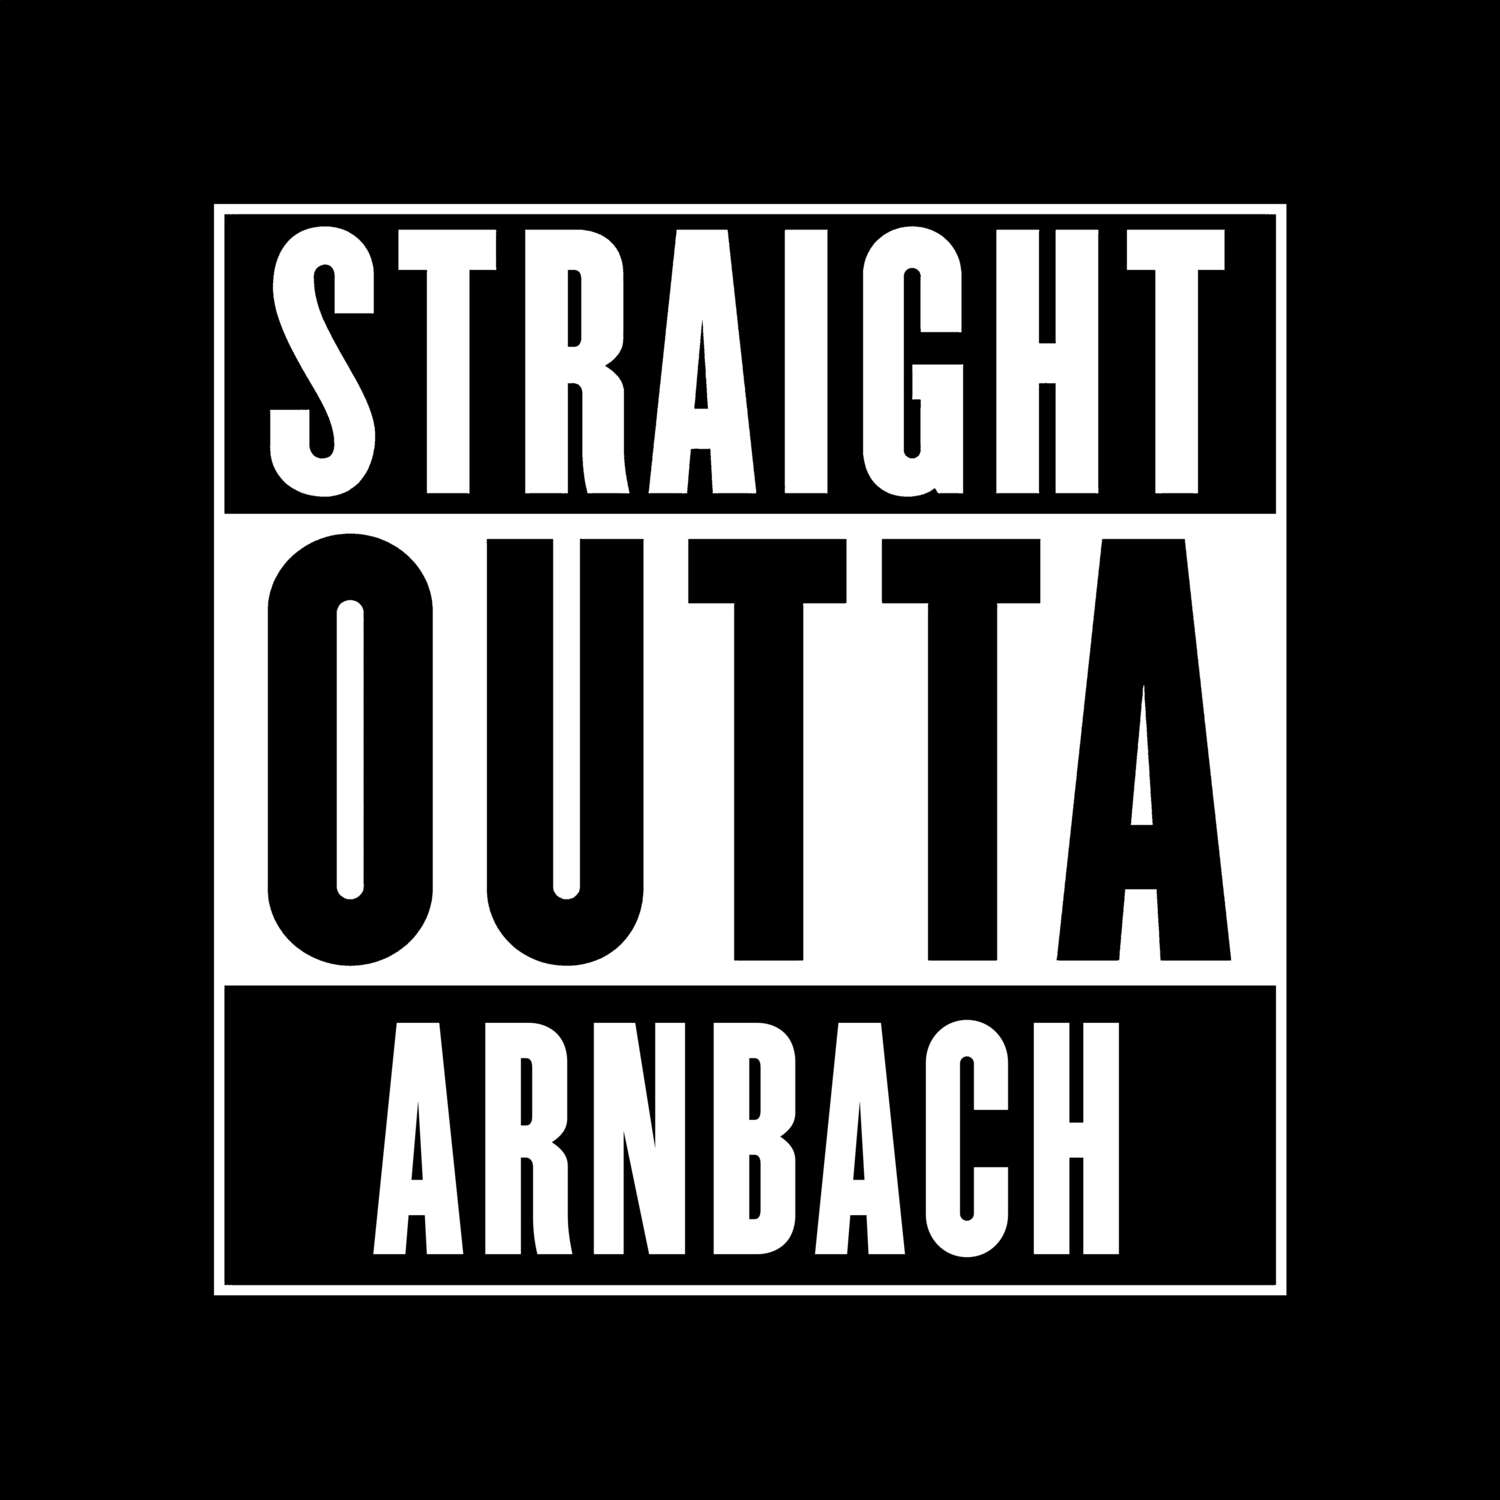 Arnbach T-Shirt »Straight Outta«